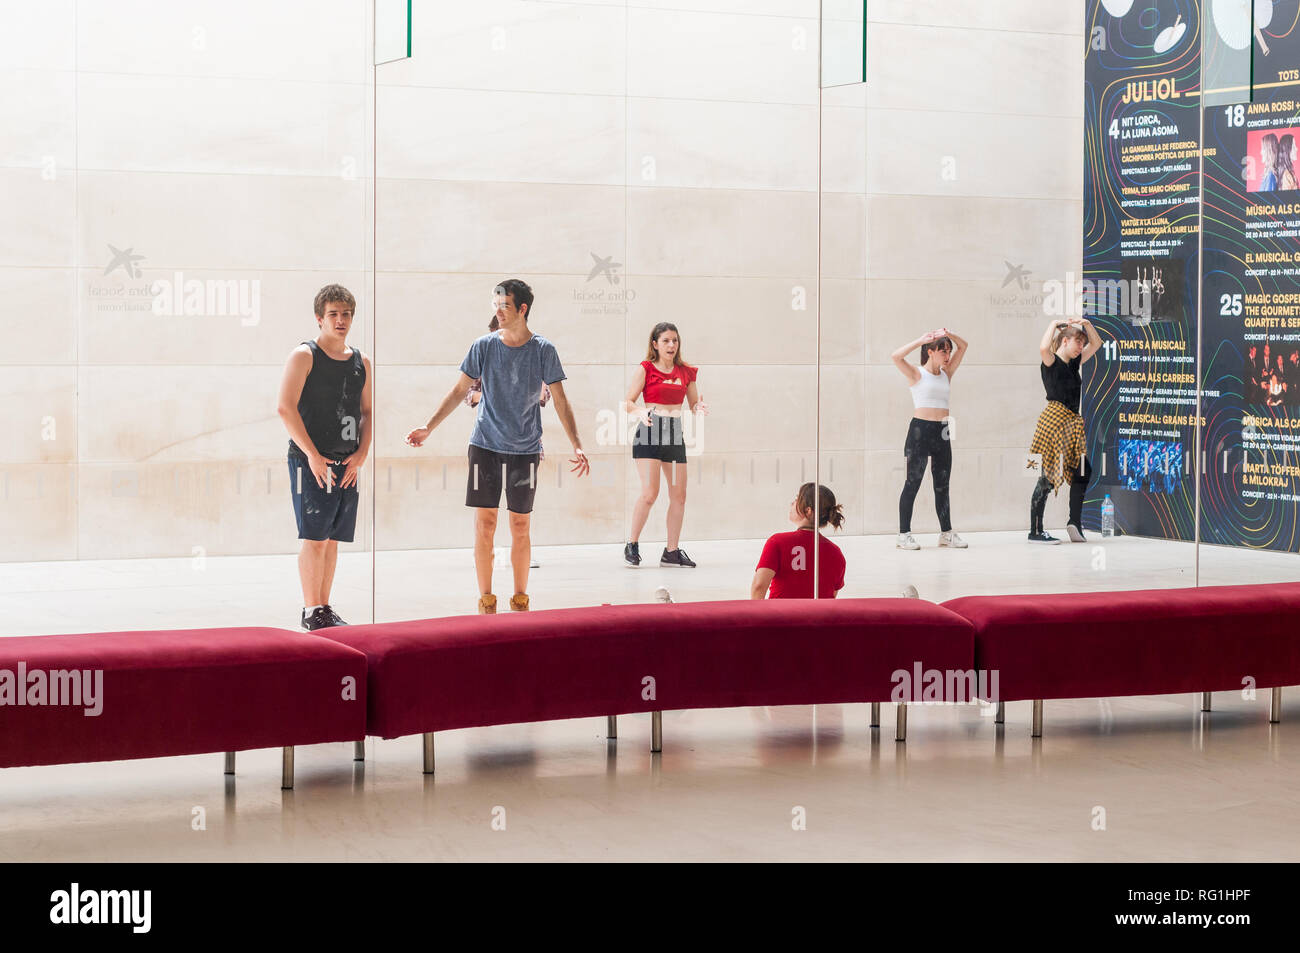 Niños y niñas bailando en frente de CaixaForum Barcelona Galería de arte, mirarse reflejado en el cristal, Barcelona, Cataluña, España Foto de stock